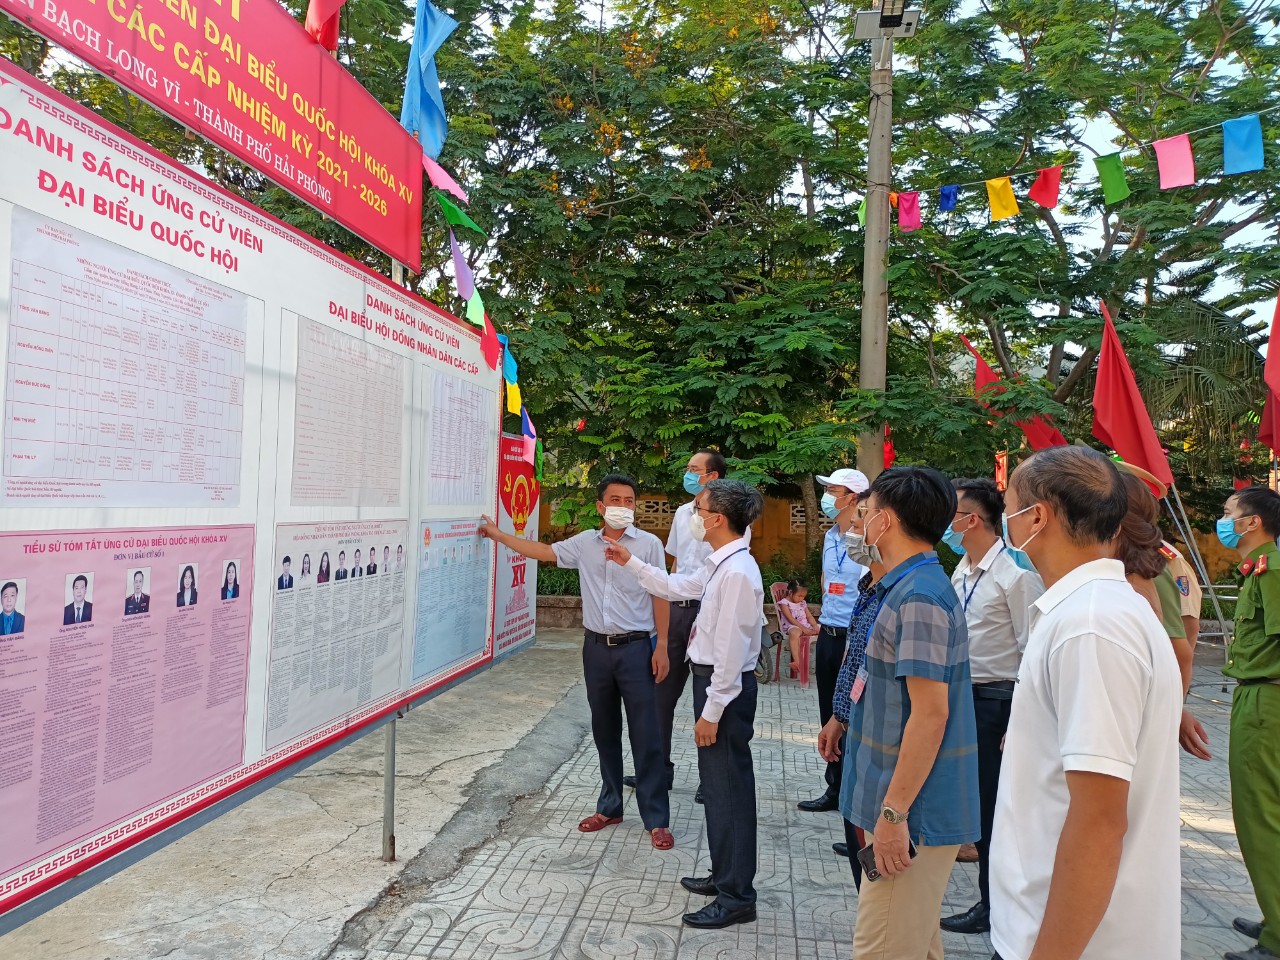 Hải Phòng: Khai mạc bầu cử sớm tại huyện đảo Bạch Long Vỹ - Ảnh 5.